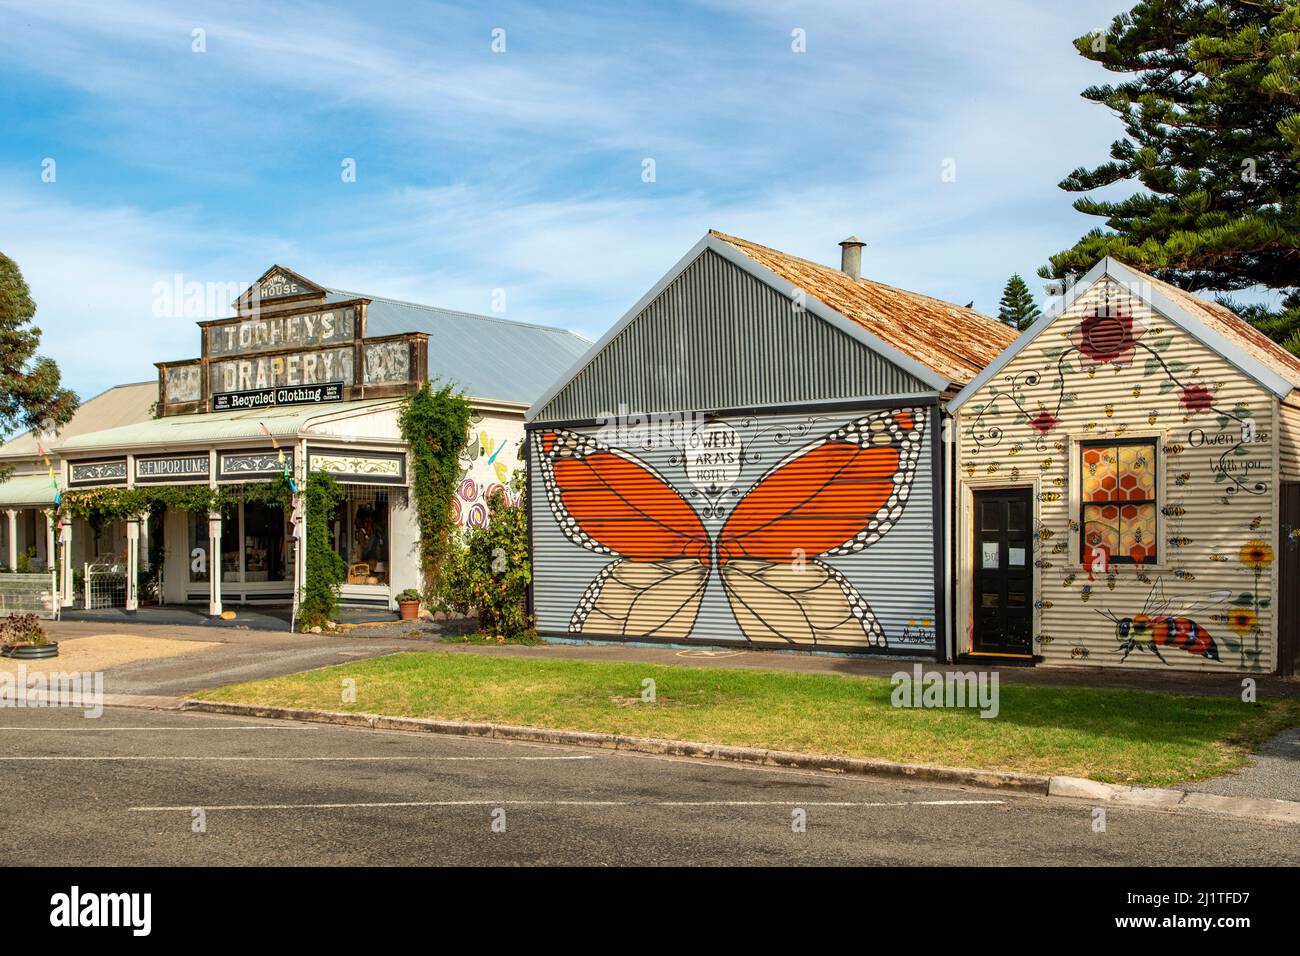 Old Emporium and Street Art, Owen, South Australia, Australia Stock Photo